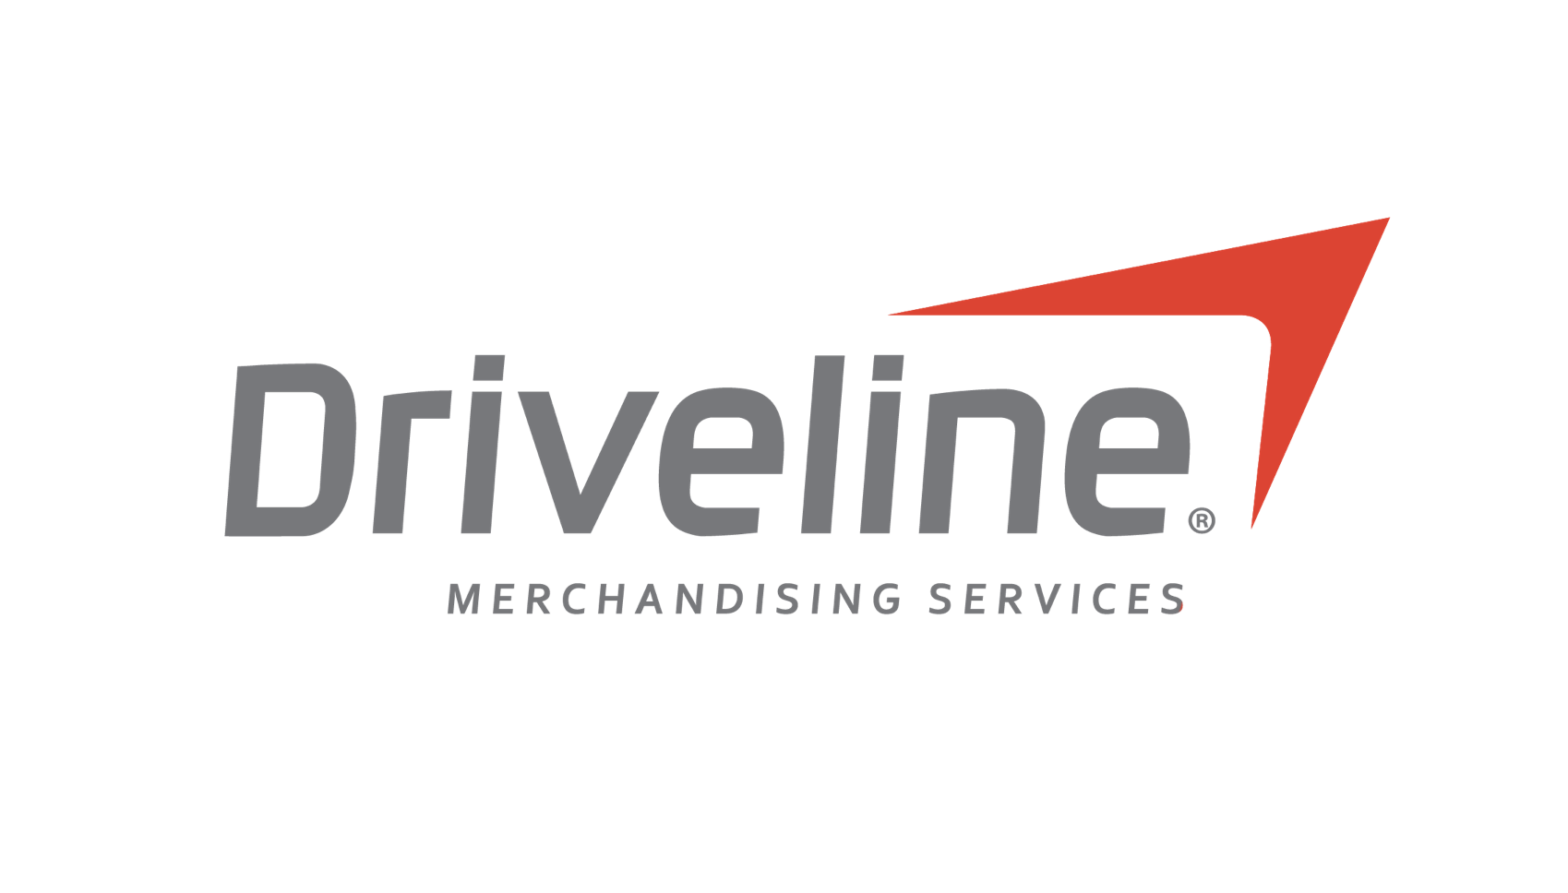 Driveline-Logo-v2--1568x893.png